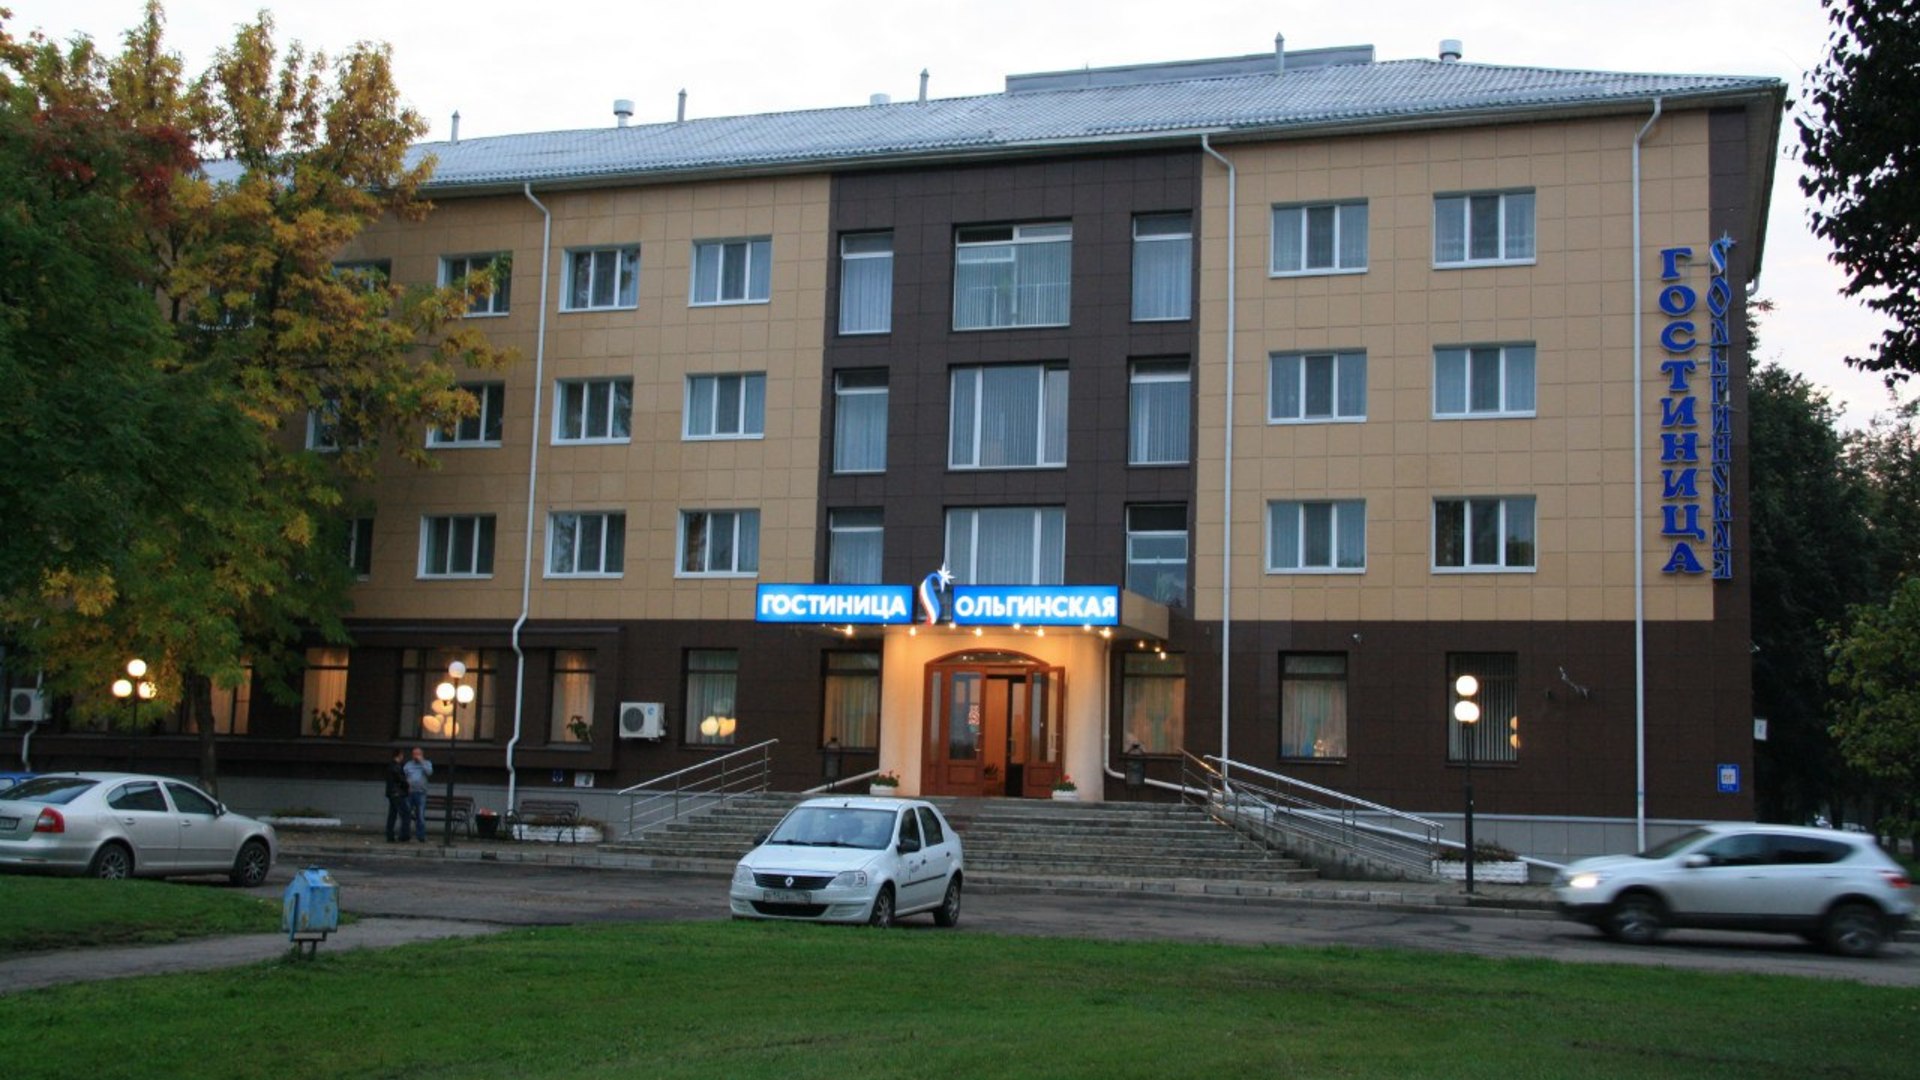 Гостиница Ольгинская